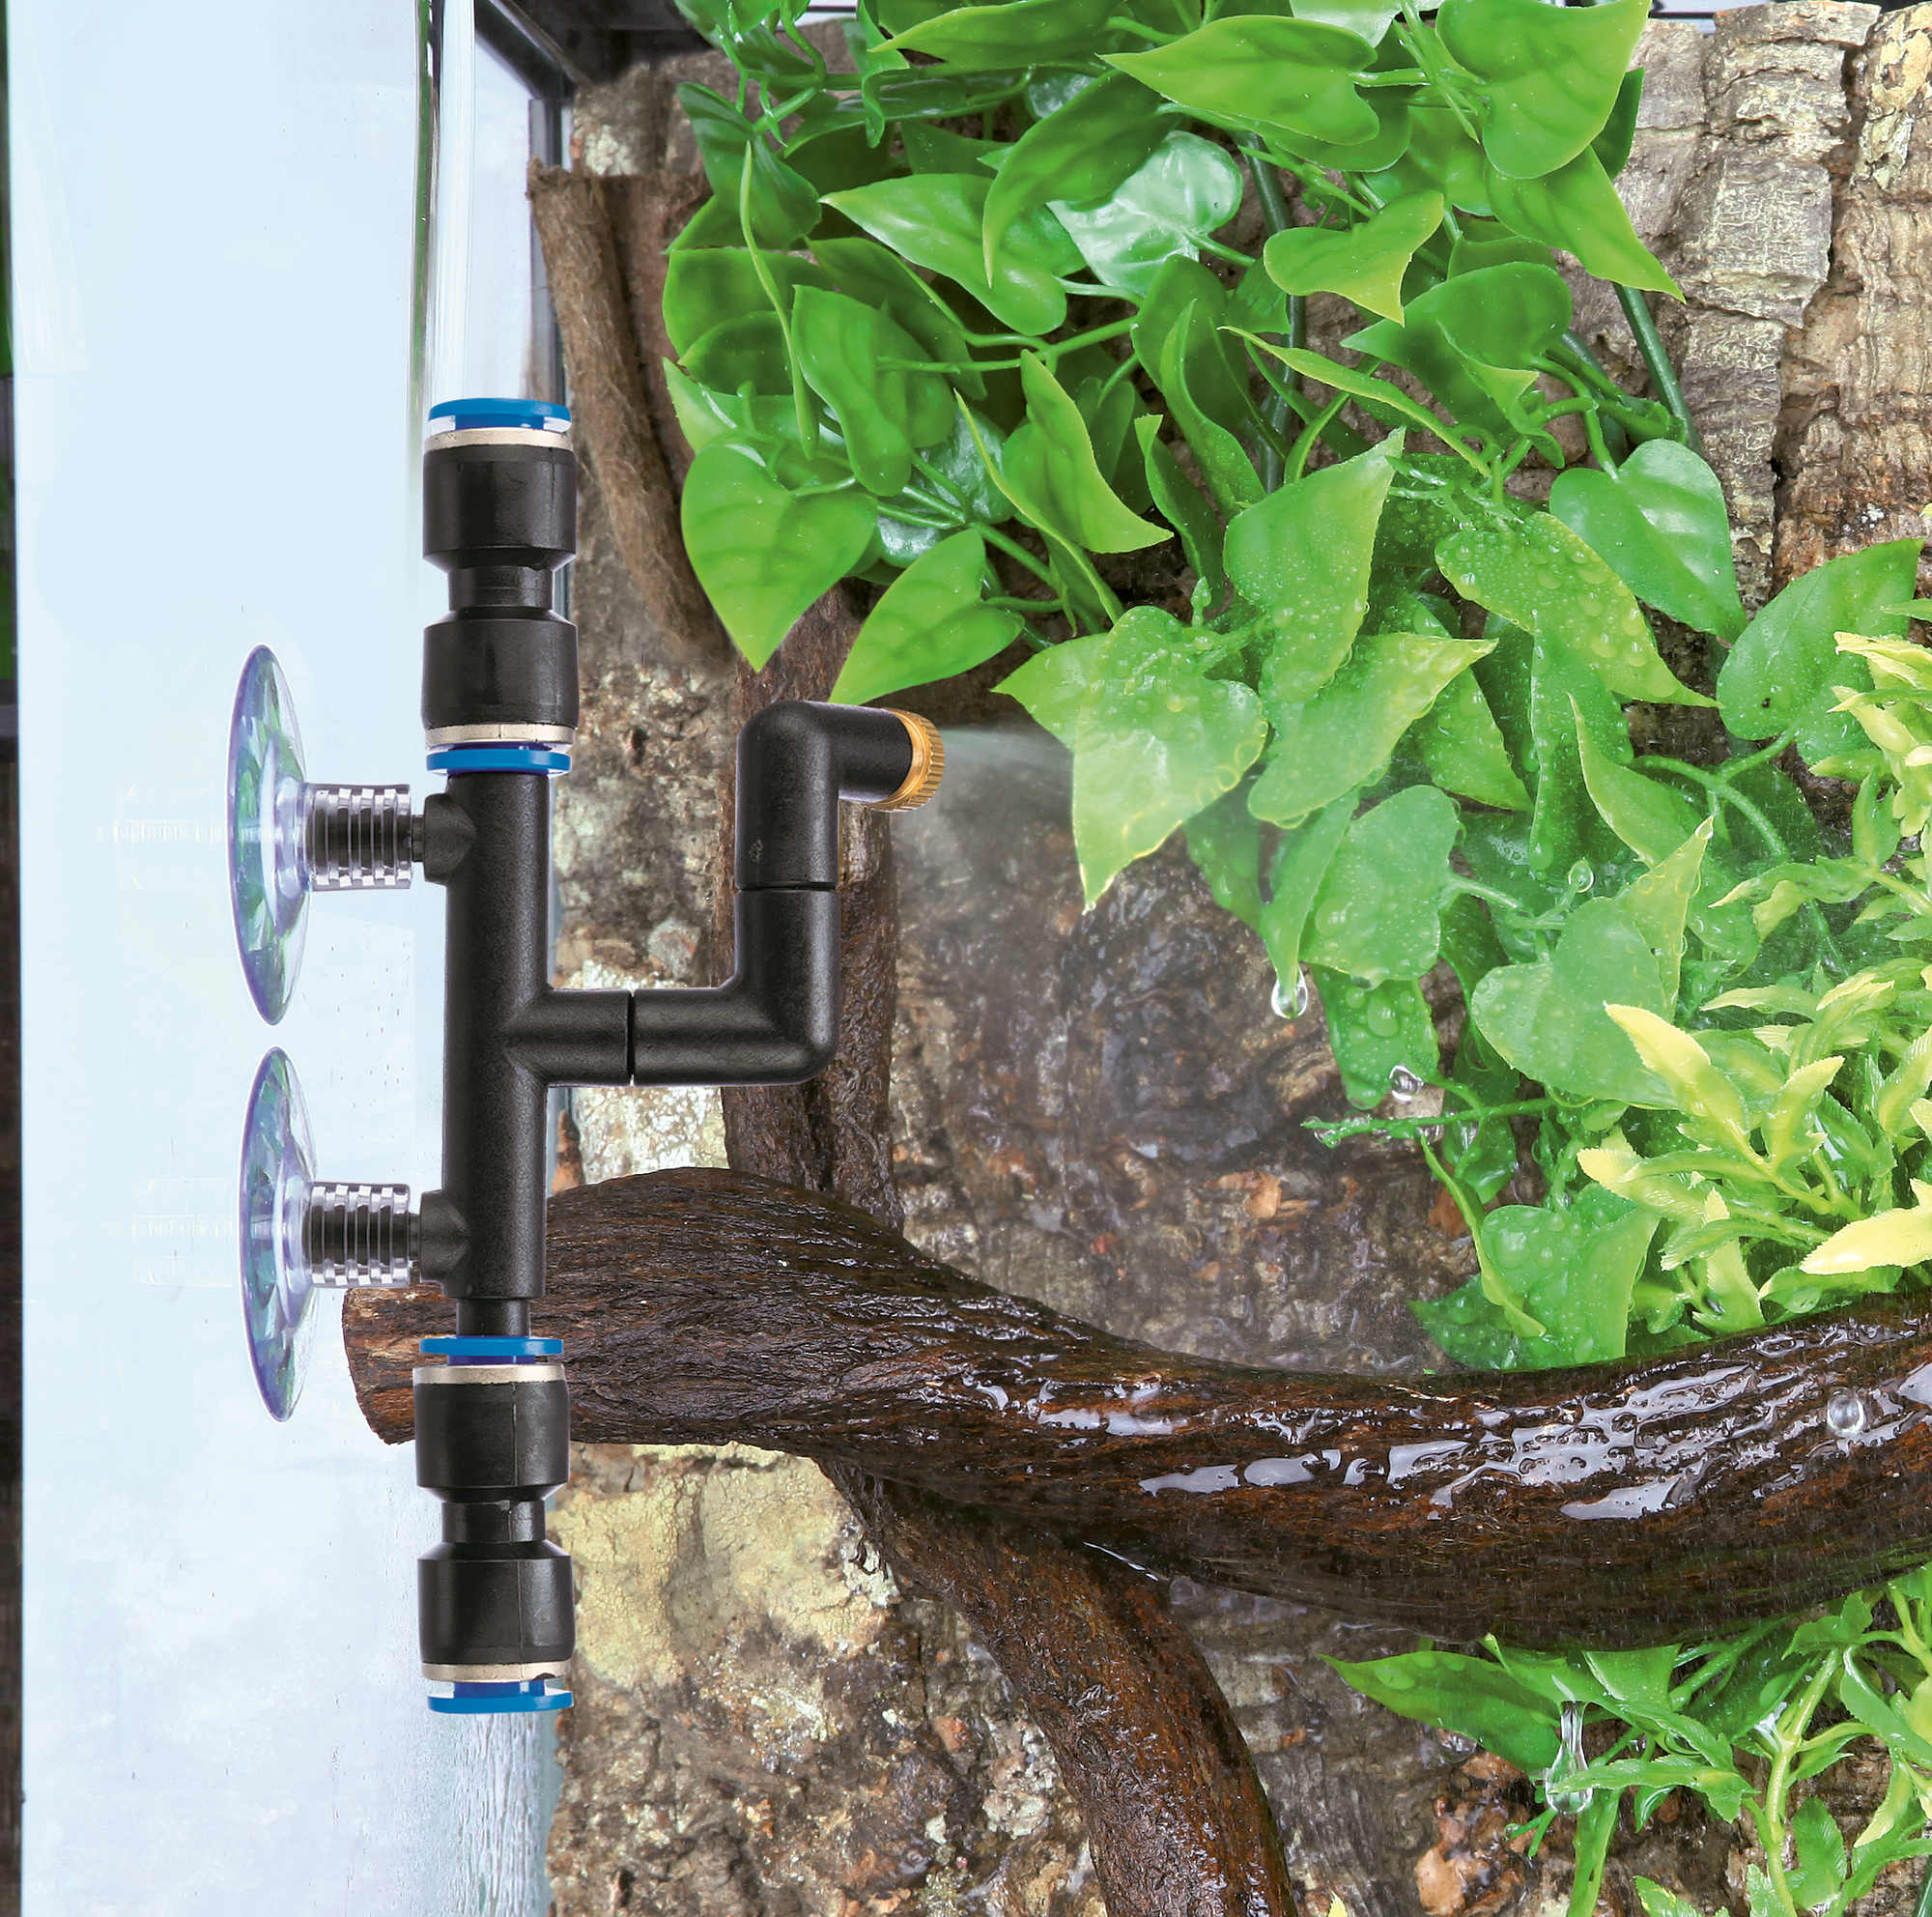 Sistema de irrigação Reptile Rain com temporizador